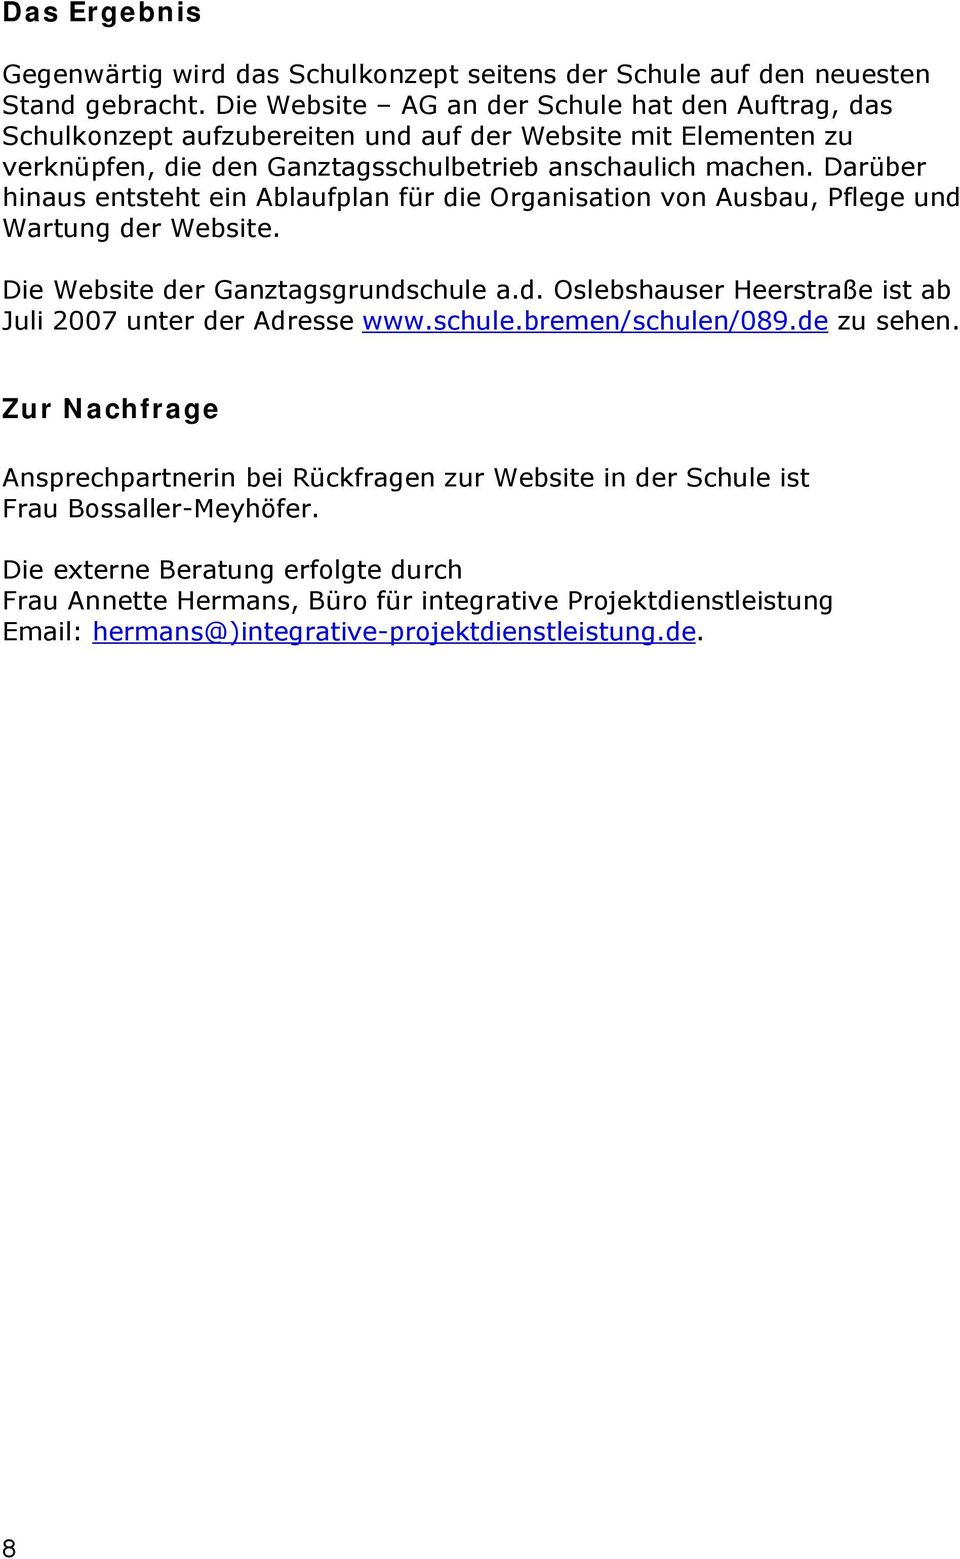 Darüber hinaus entsteht ein Ablaufplan für die Organisation von Ausbau, Pflege und Wartung der Website. Die Website der Ganztagsgrundschule a.d. Oslebshauser Heerstraße ist ab Juli 2007 unter der Adresse www.